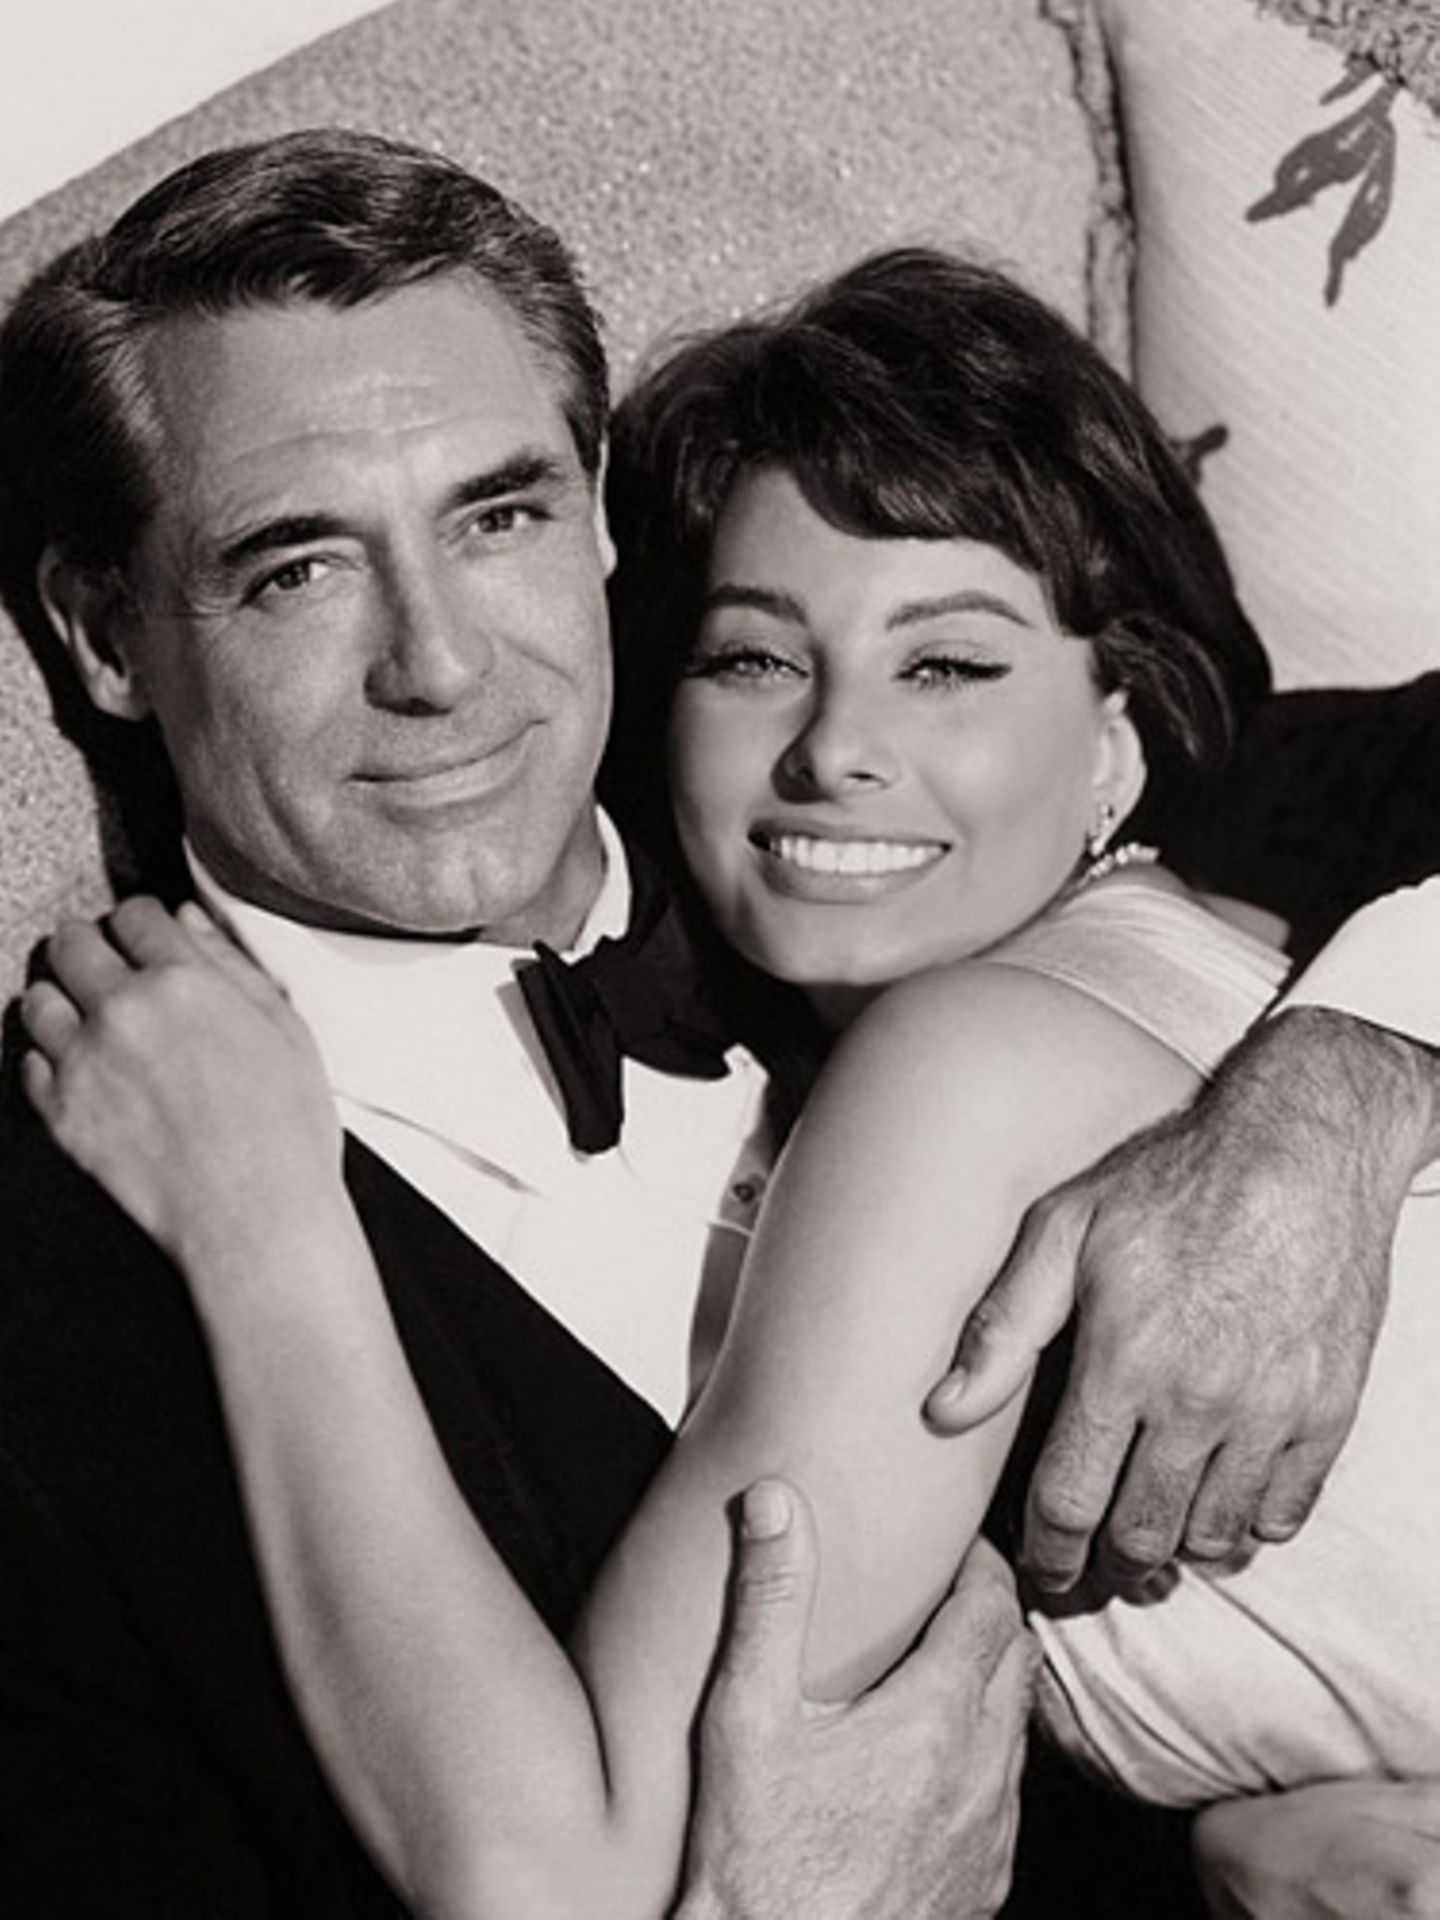 "Ich habe während unserer Zusammenarbeit viel von Cary Grant gelernt. Er kann sich unglaublich gut konzentrieren. Viele Schauspieler haben nicht den Mut, still zu stehen. Cary Grant weiß, wie man sich konzentriert, er weiß, wie er seinem Gegenüber direkt in die Augen sieht, allerdings immer mit großer Gelassenheit", so Sophia Loren über Cary Grant, hier zusammen in "Hausboot" aus dem Jahr 1958.